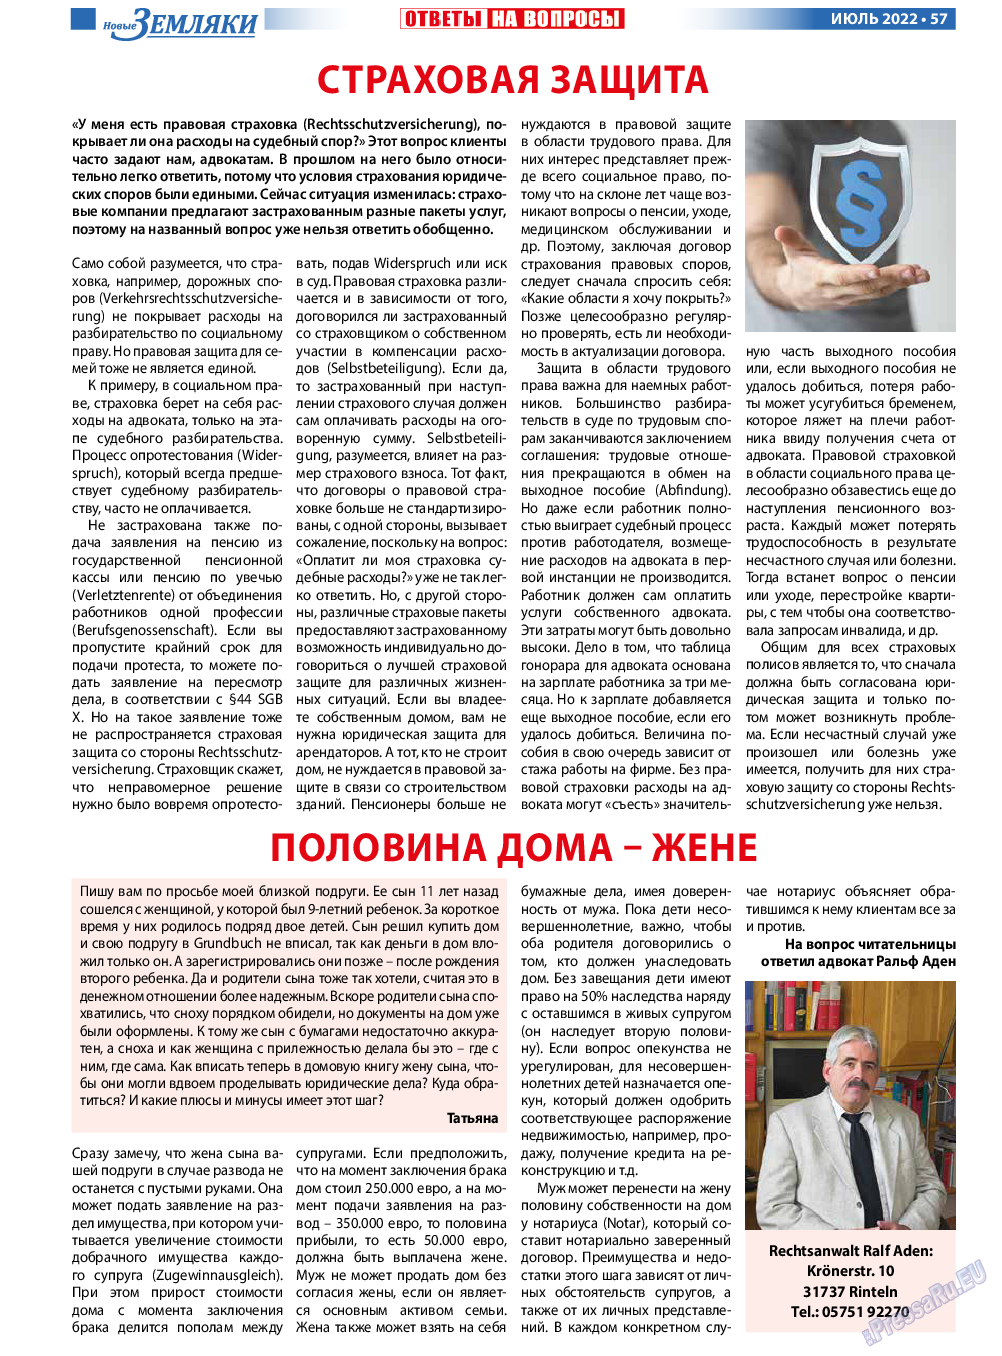 Новые Земляки, газета. 2022 №7 стр.57